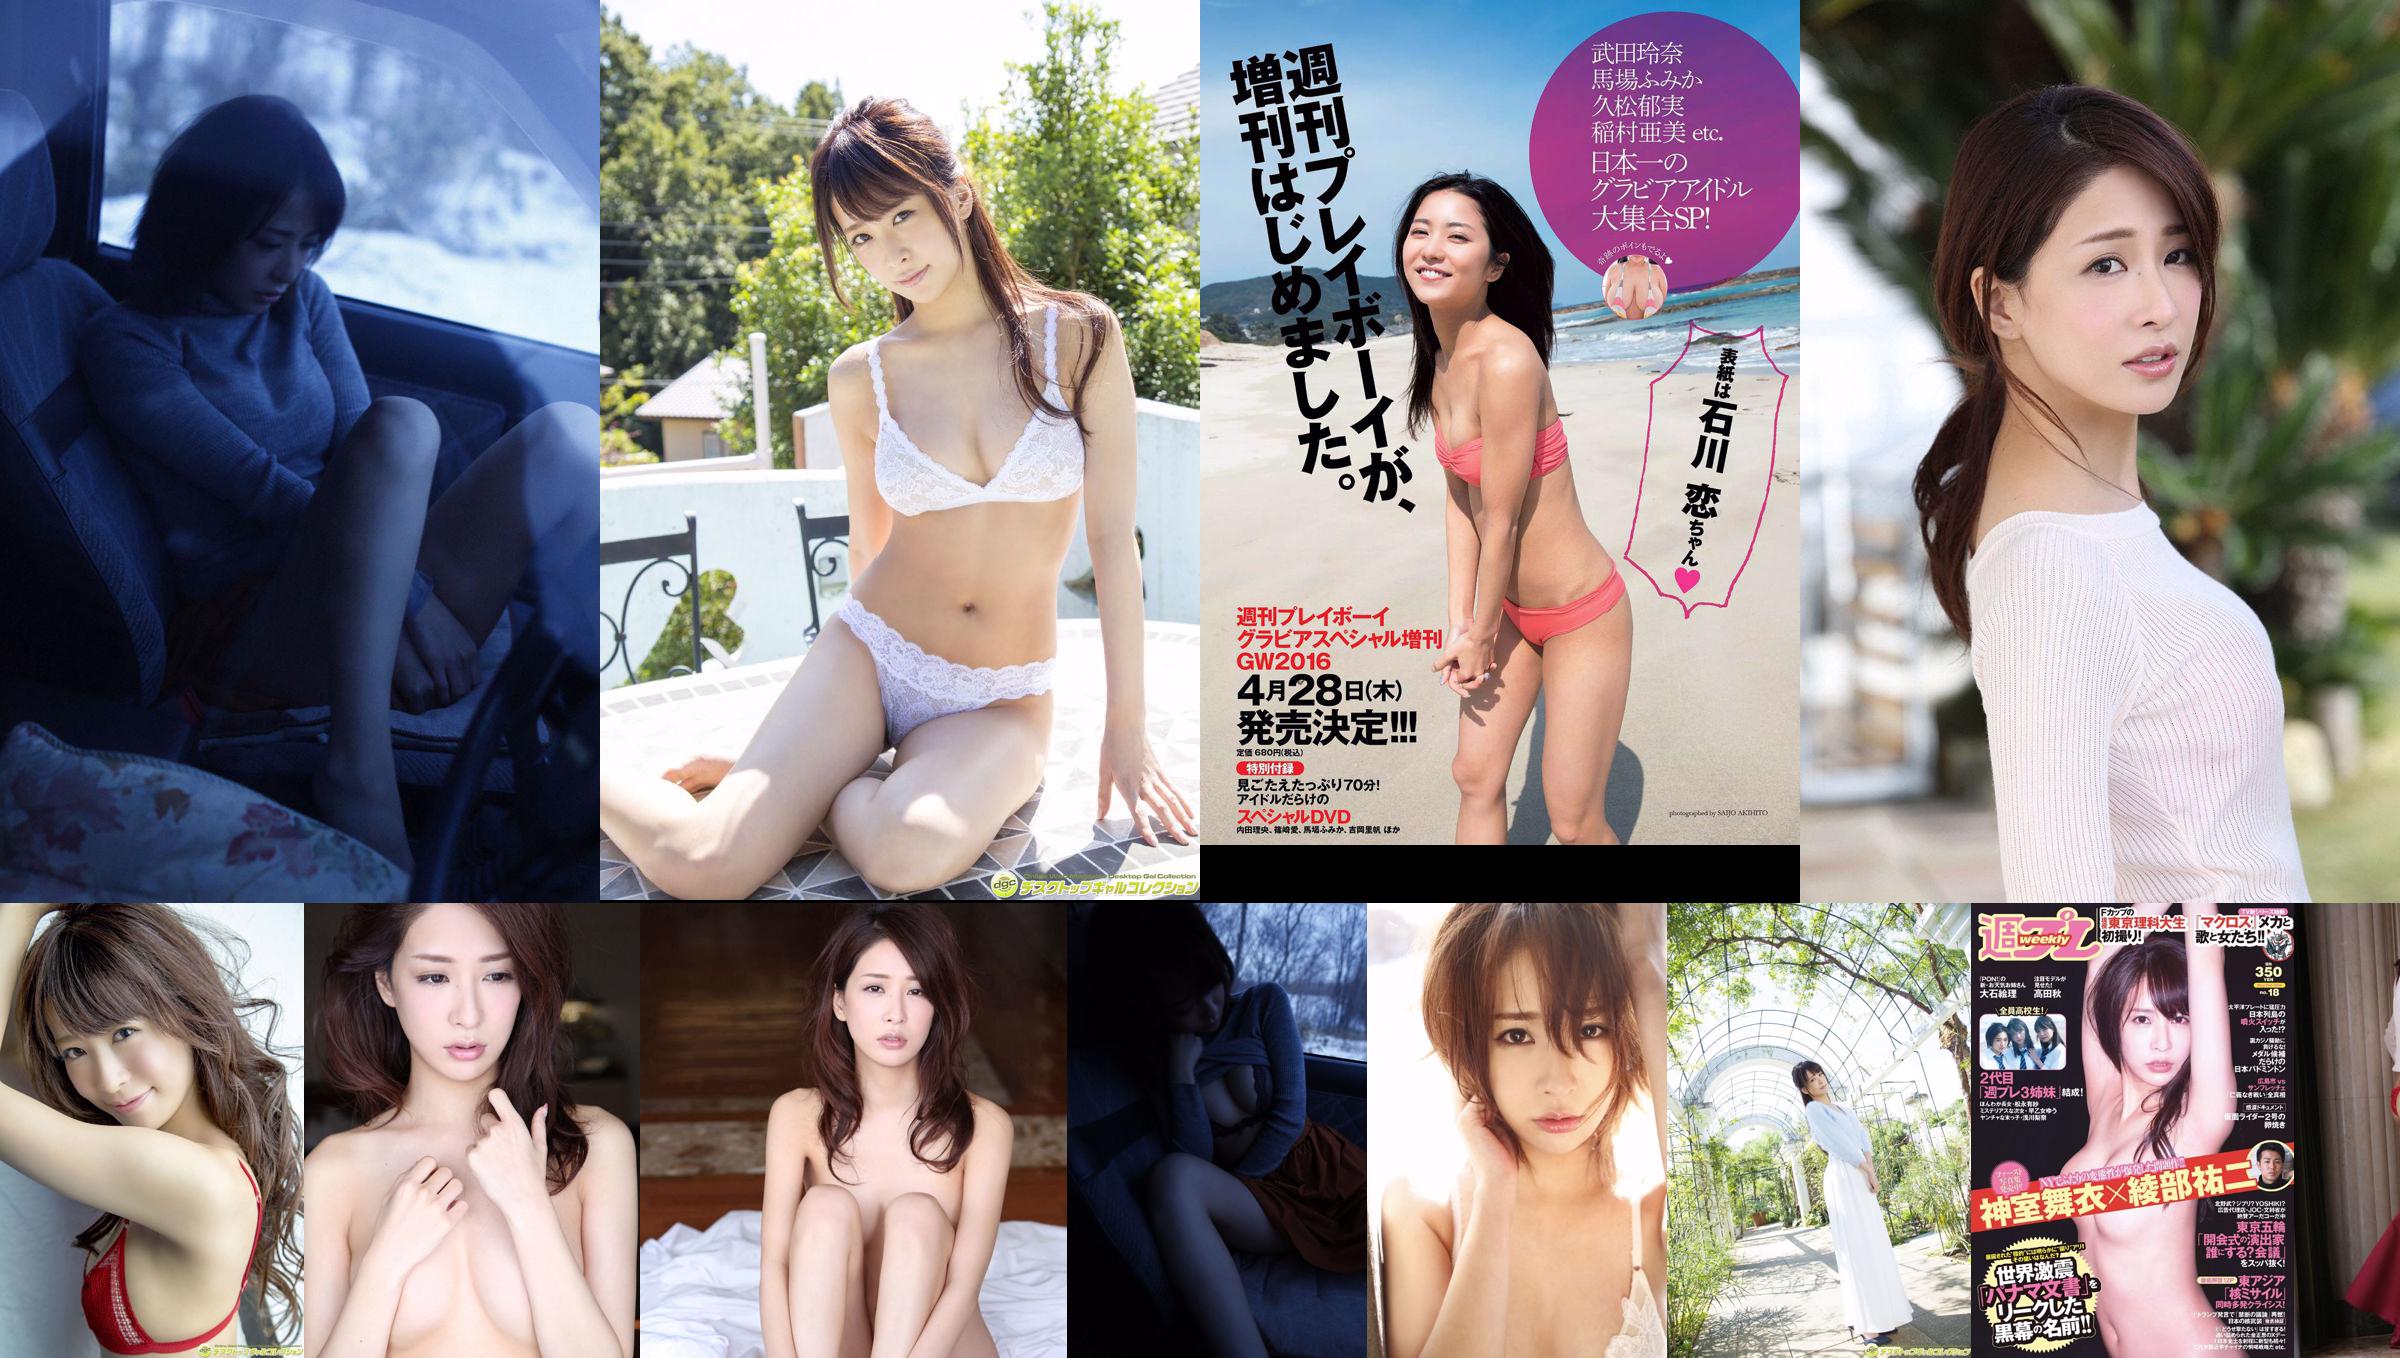 Mai Kamuro Arisa Matsunaga Yu Saotome Rina Asakawa Shu Takada Ayana Takeda Eri Oishi [Weekly Playboy] 2016 No.18 Photographie No.d48999 Page 4